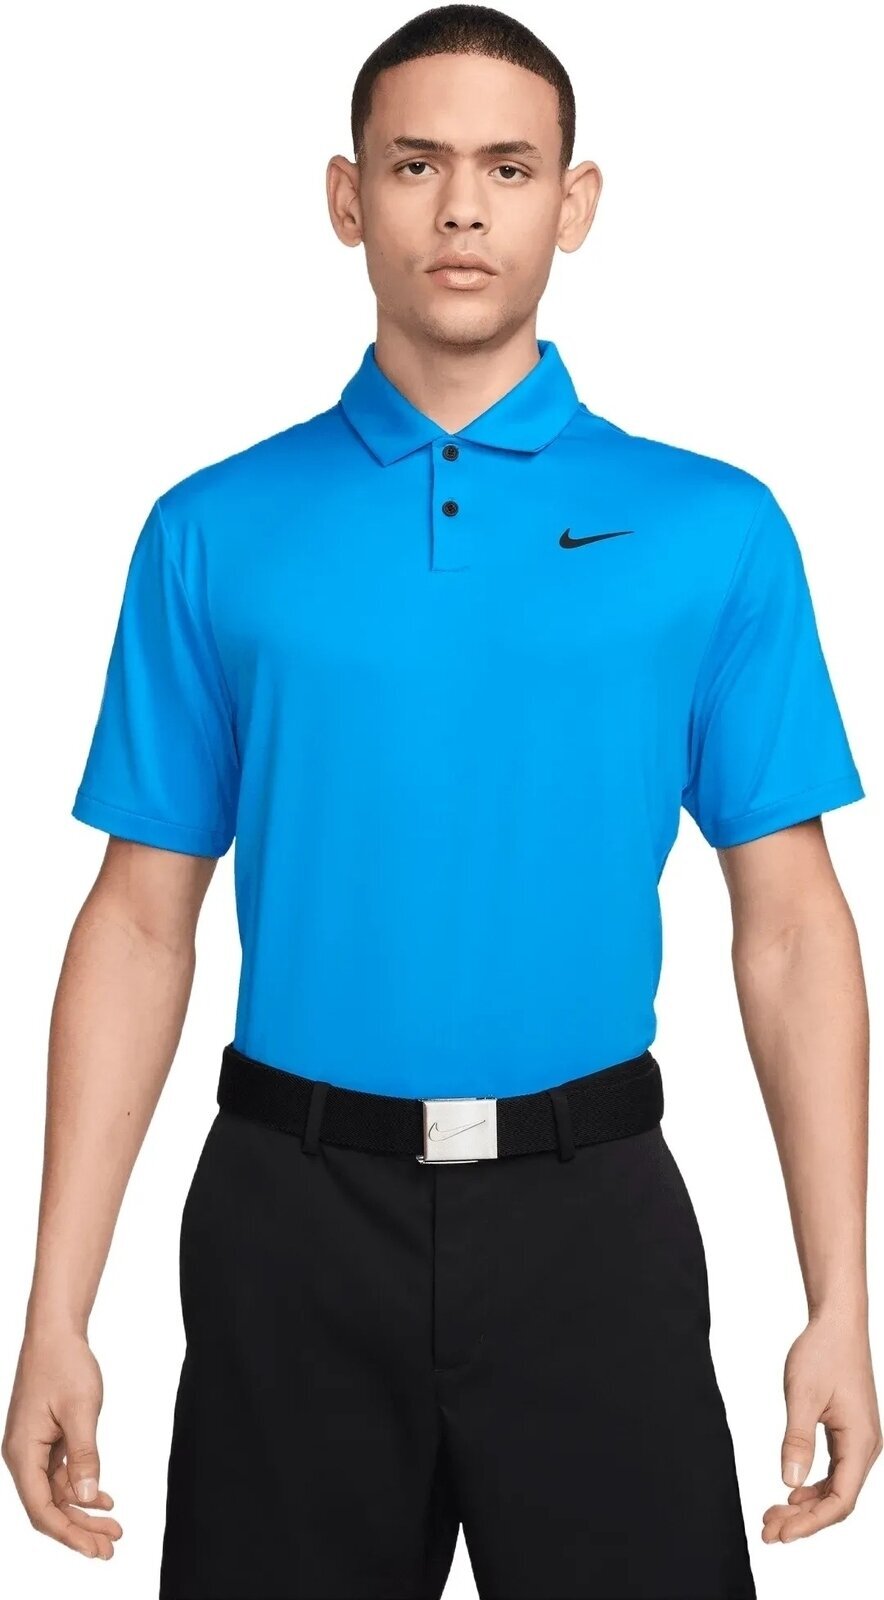 Polo Shirt Nike Dri-Fit Tour Solid Mens Polo Light Photo Blue/Black L